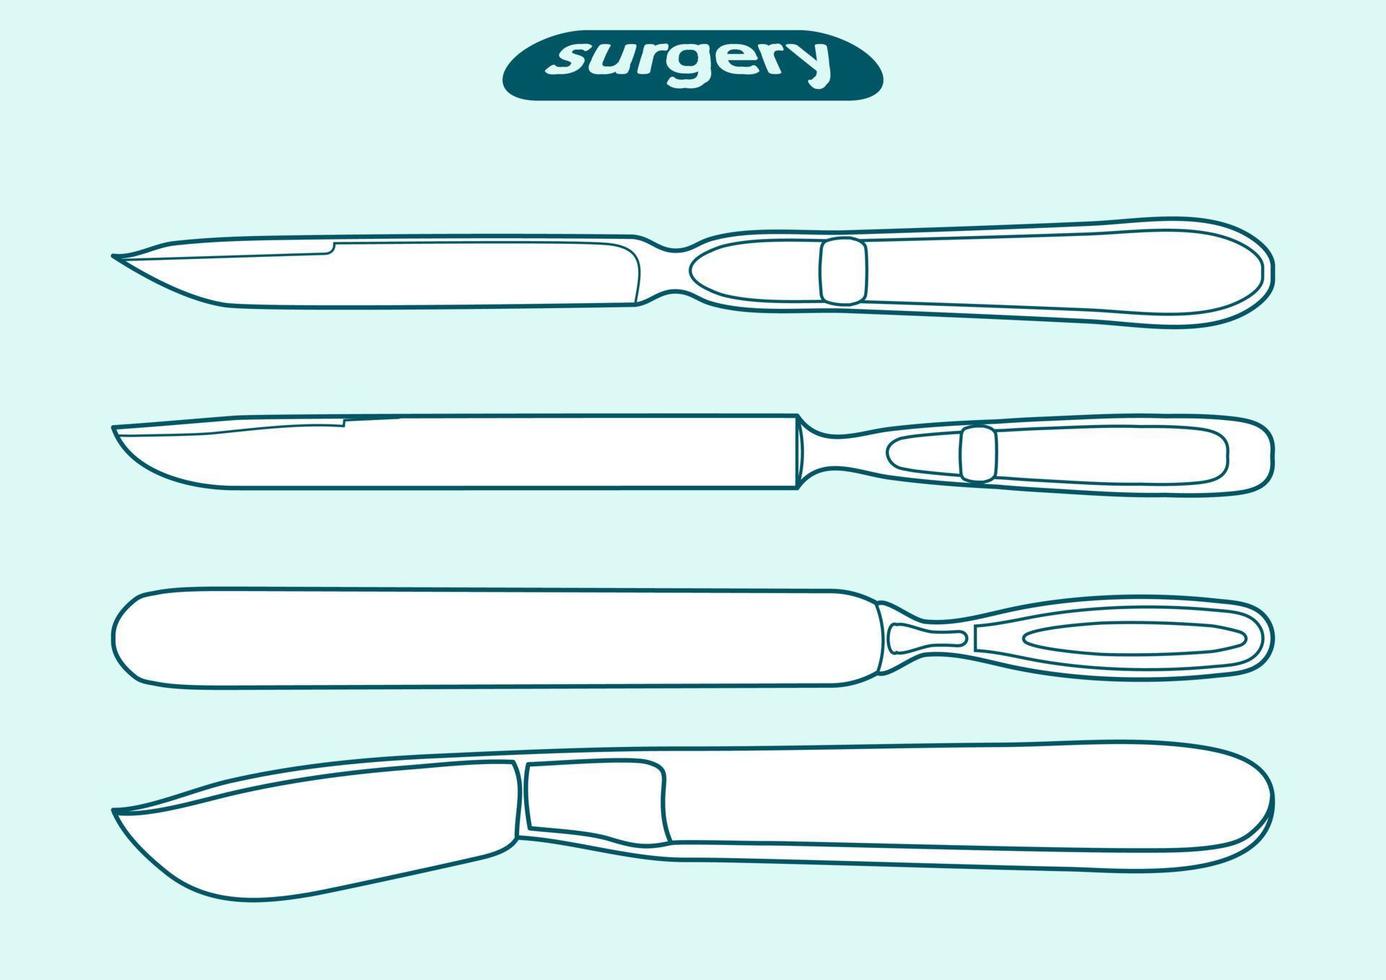 set, skiss kontur av en skalpell, kniv, blad, skär siluett. kirurgiskt, medicinskt instrument vektor